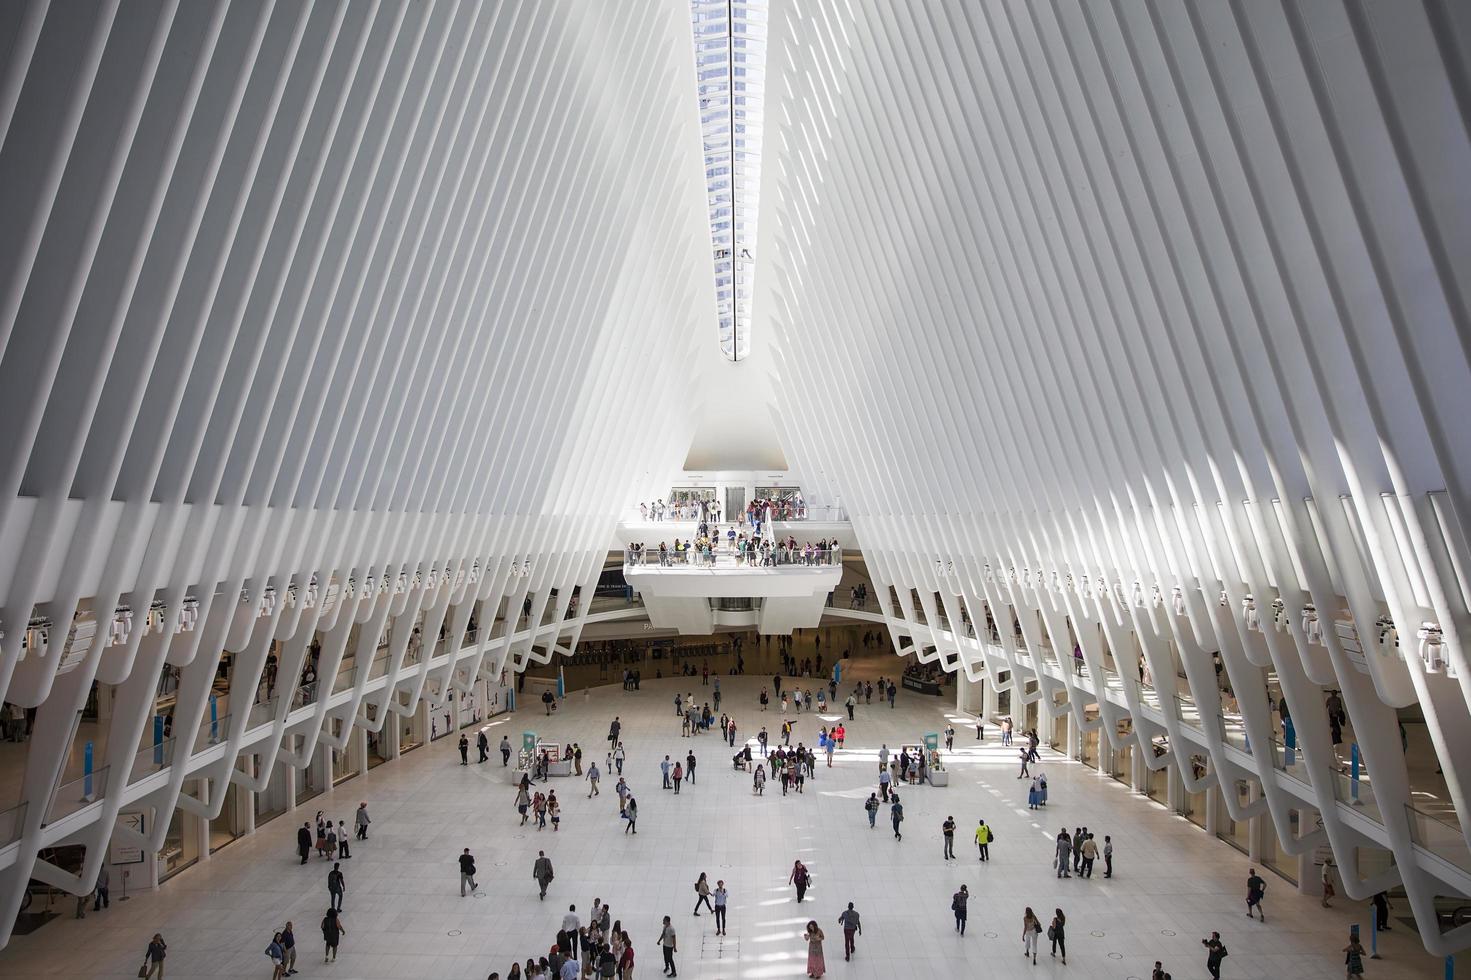 new york, stati uniti, 30 agosto 2017 - persone non identificate a oculus a new york. oculus, una sbalorditiva struttura in vetro e acciaio progettata dall'architetto spagnolo Santiago Calatrava. foto